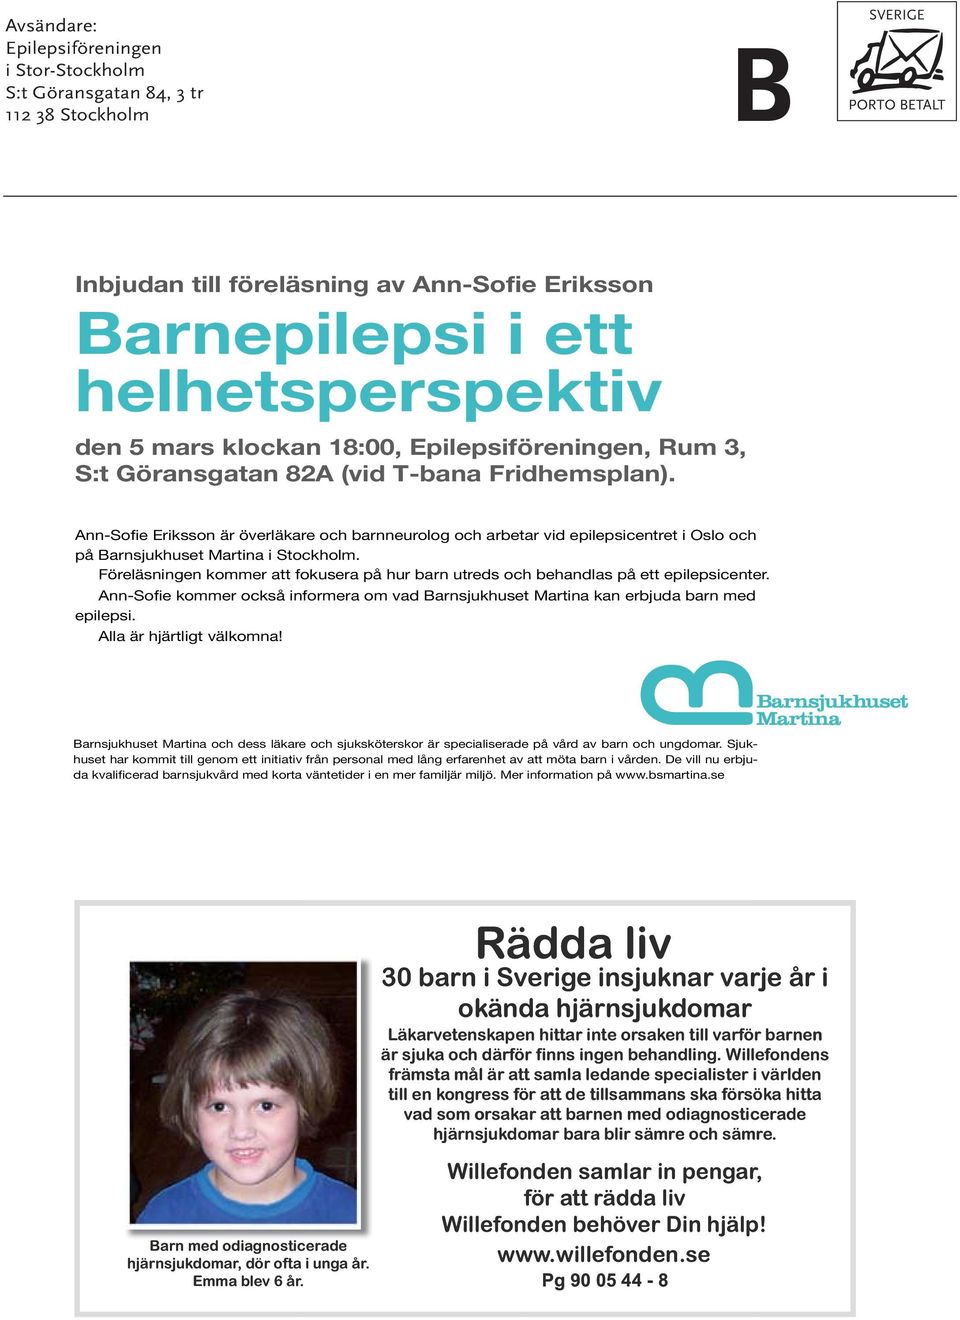 Ann-Sofie Eriksson är överläkare och barnneurolog och arbetar vid epilepsicentret i Oslo och på Barnsjukhuset Martina i Stockholm.